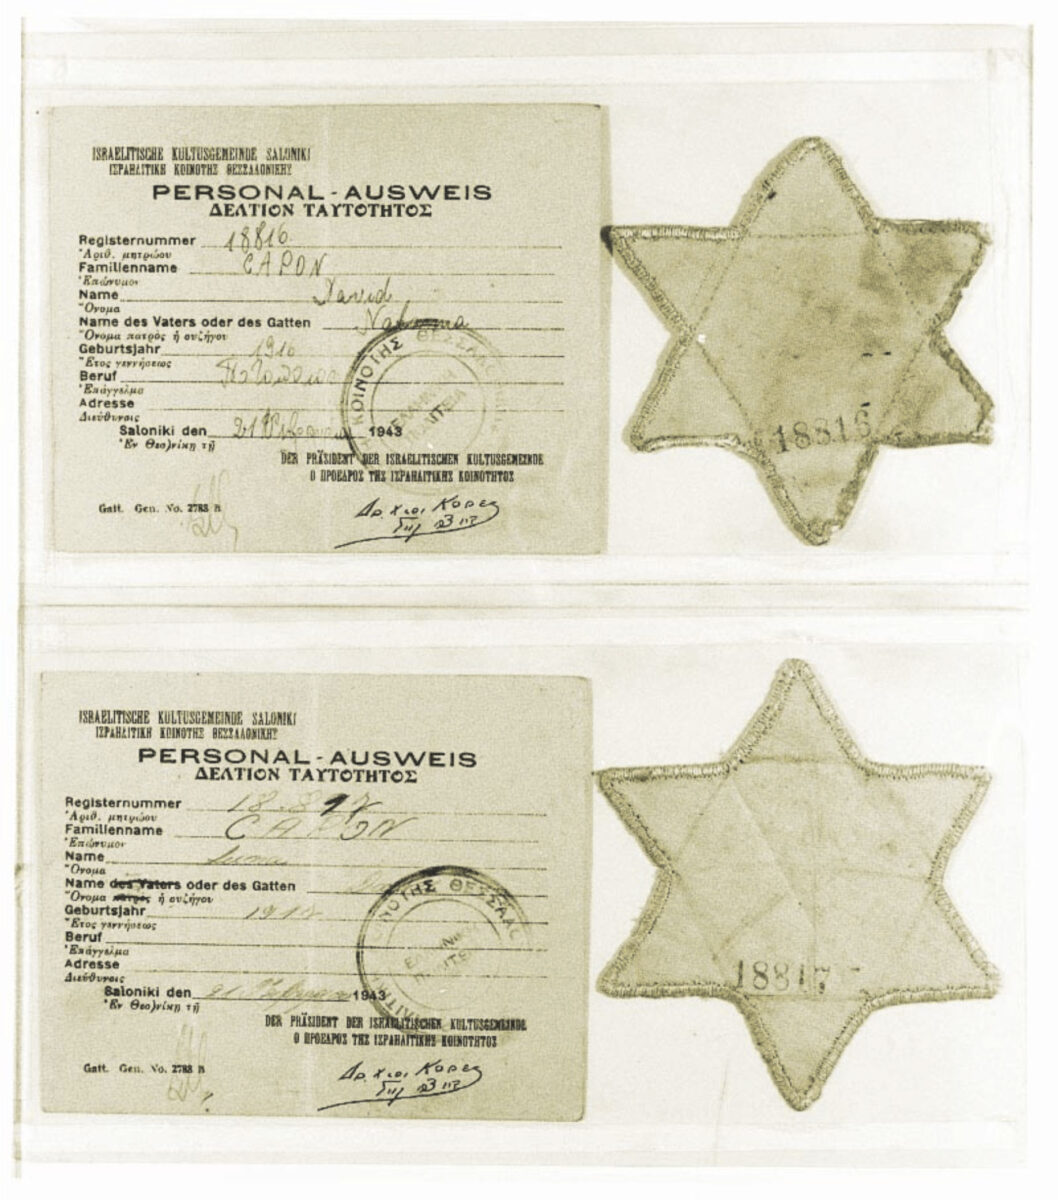 Αστέρια από κίτρινο ύφασμα και ταυτότητες που δόθηκαν στον Δαυίδ και τη Λούνα Καπόν στη Θεσσαλονίκη, στις 21 Φεβρουαρίου 1943, για να αναγνωρίζονται ως Εβραίοι (© Συλλογή ΕΜΕ).